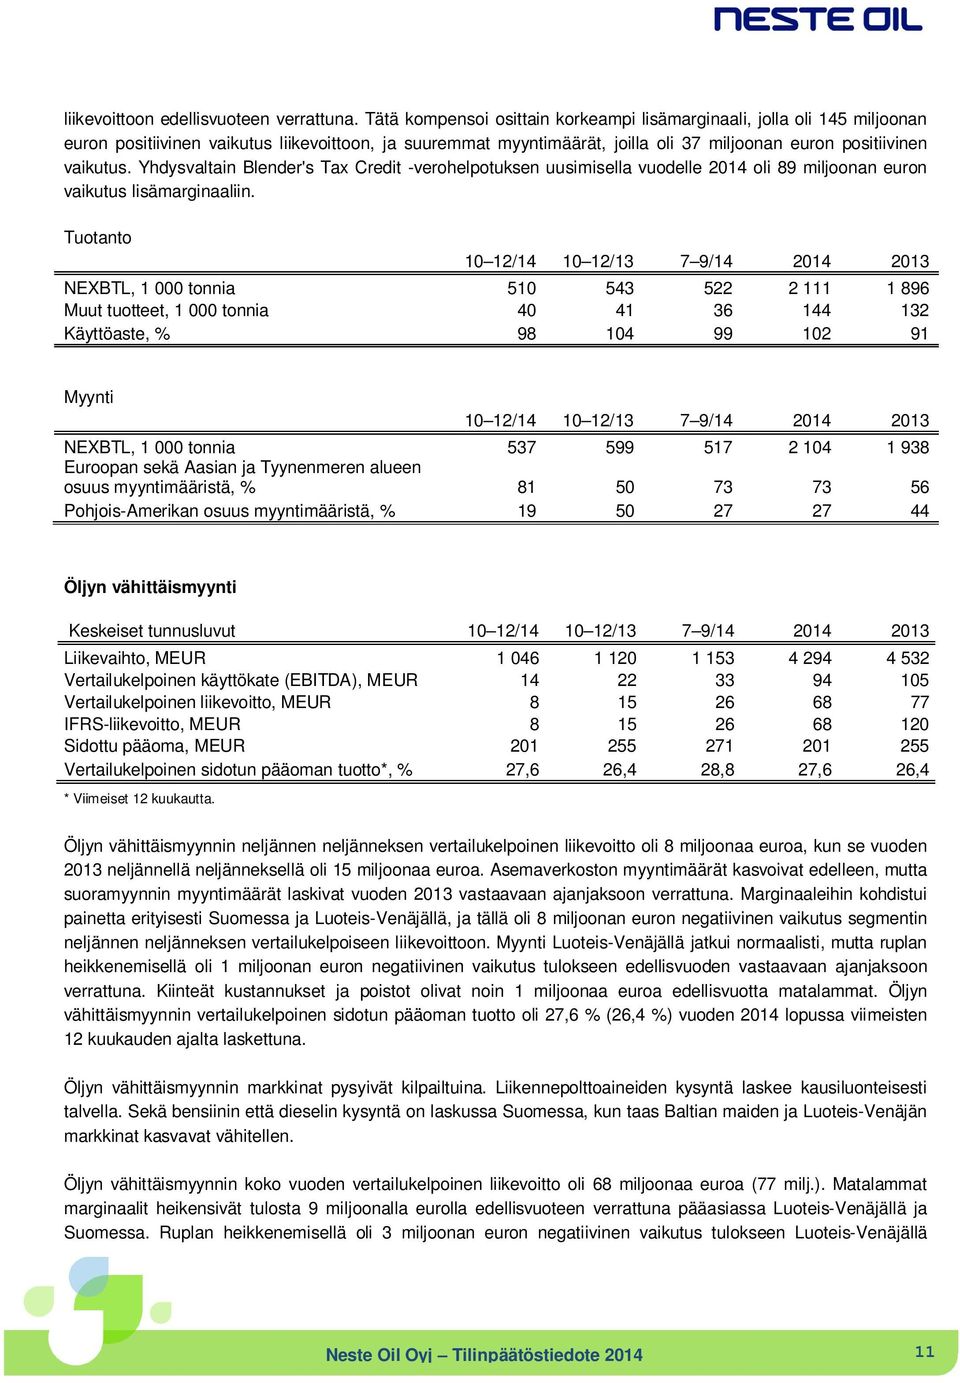 Yhdysvaltain Blender's Tax Credit -verohelpotuksen uusimisella vuodelle 2014 oli 89 miljoonan euron vaikutus lisämarginaaliin.